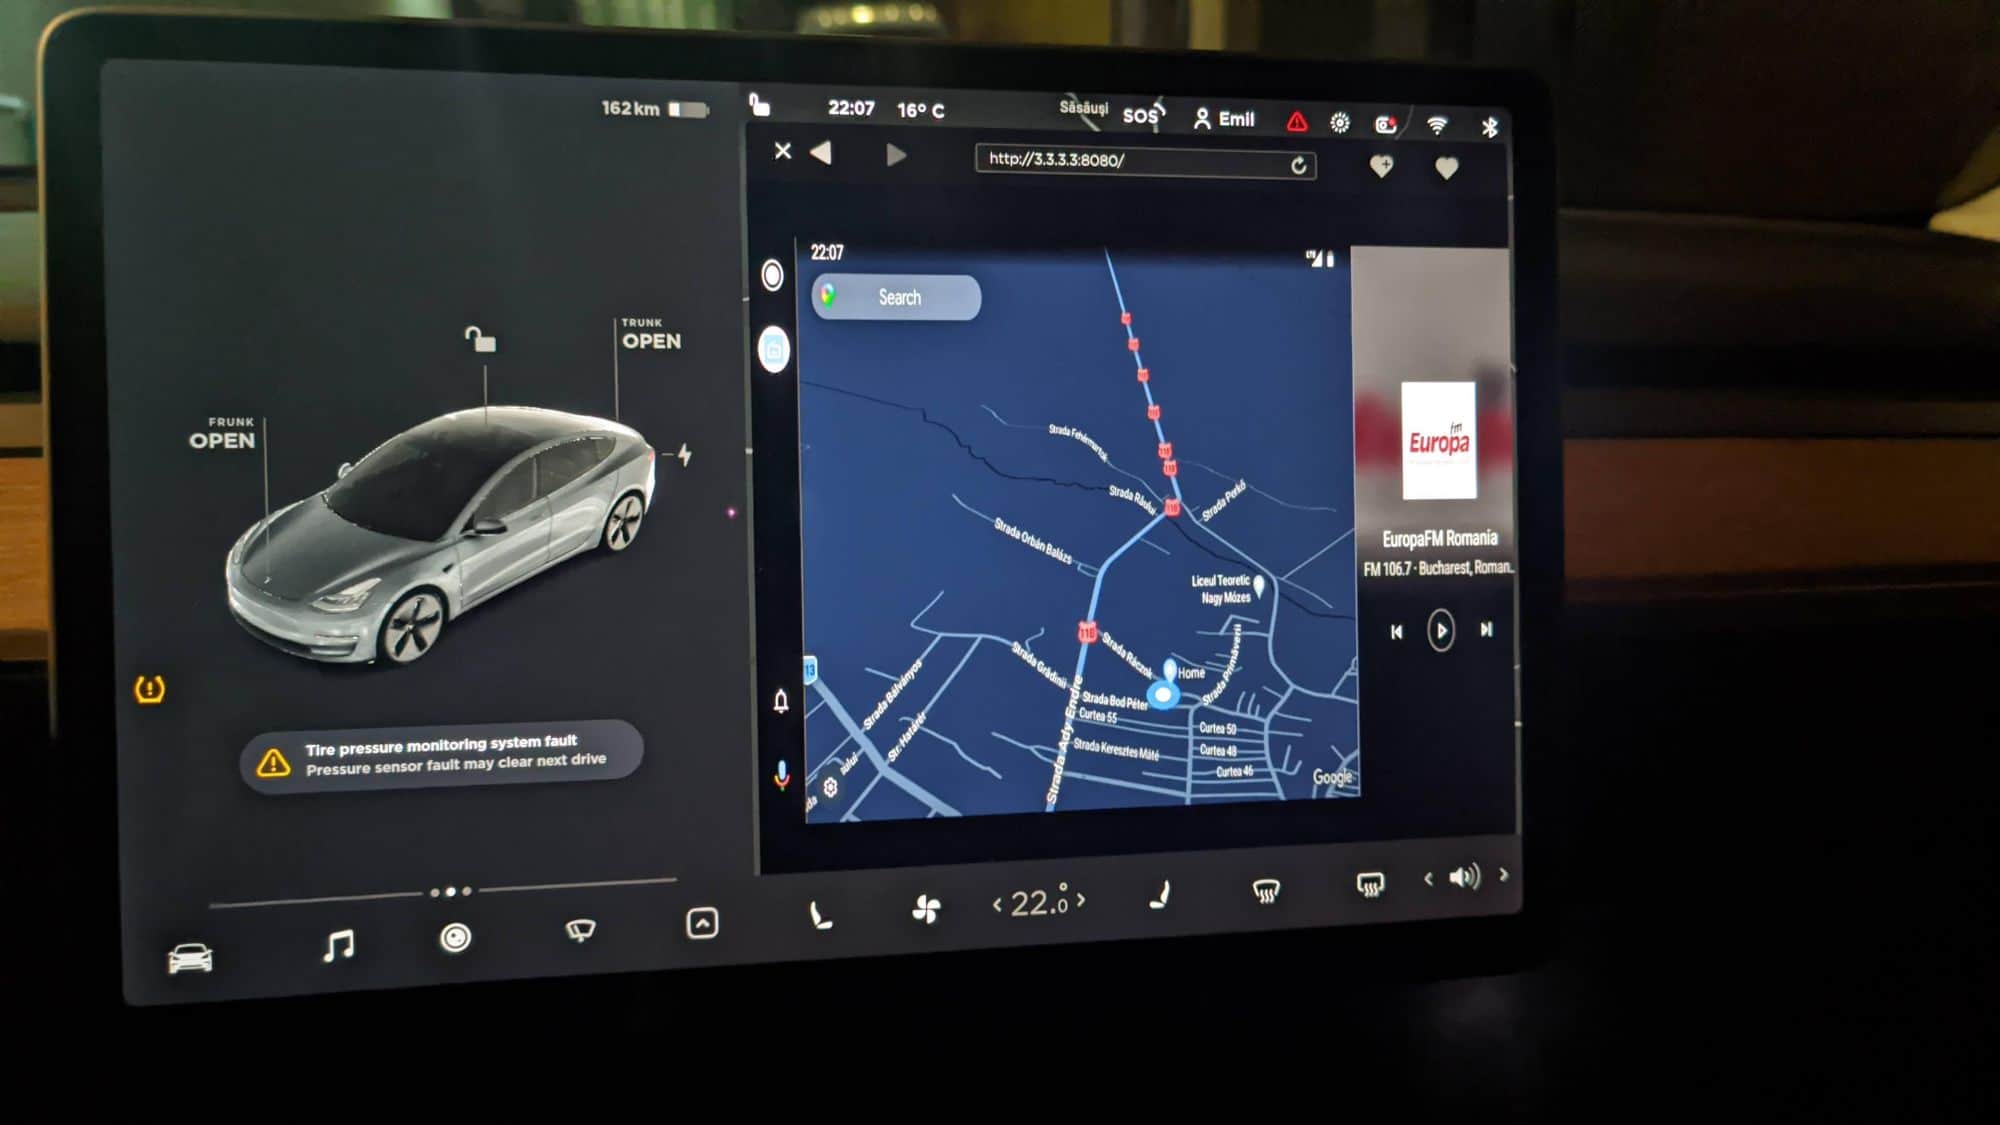 Entwickler bringt Apple CarPlay auf Tesla-Bildschirme >